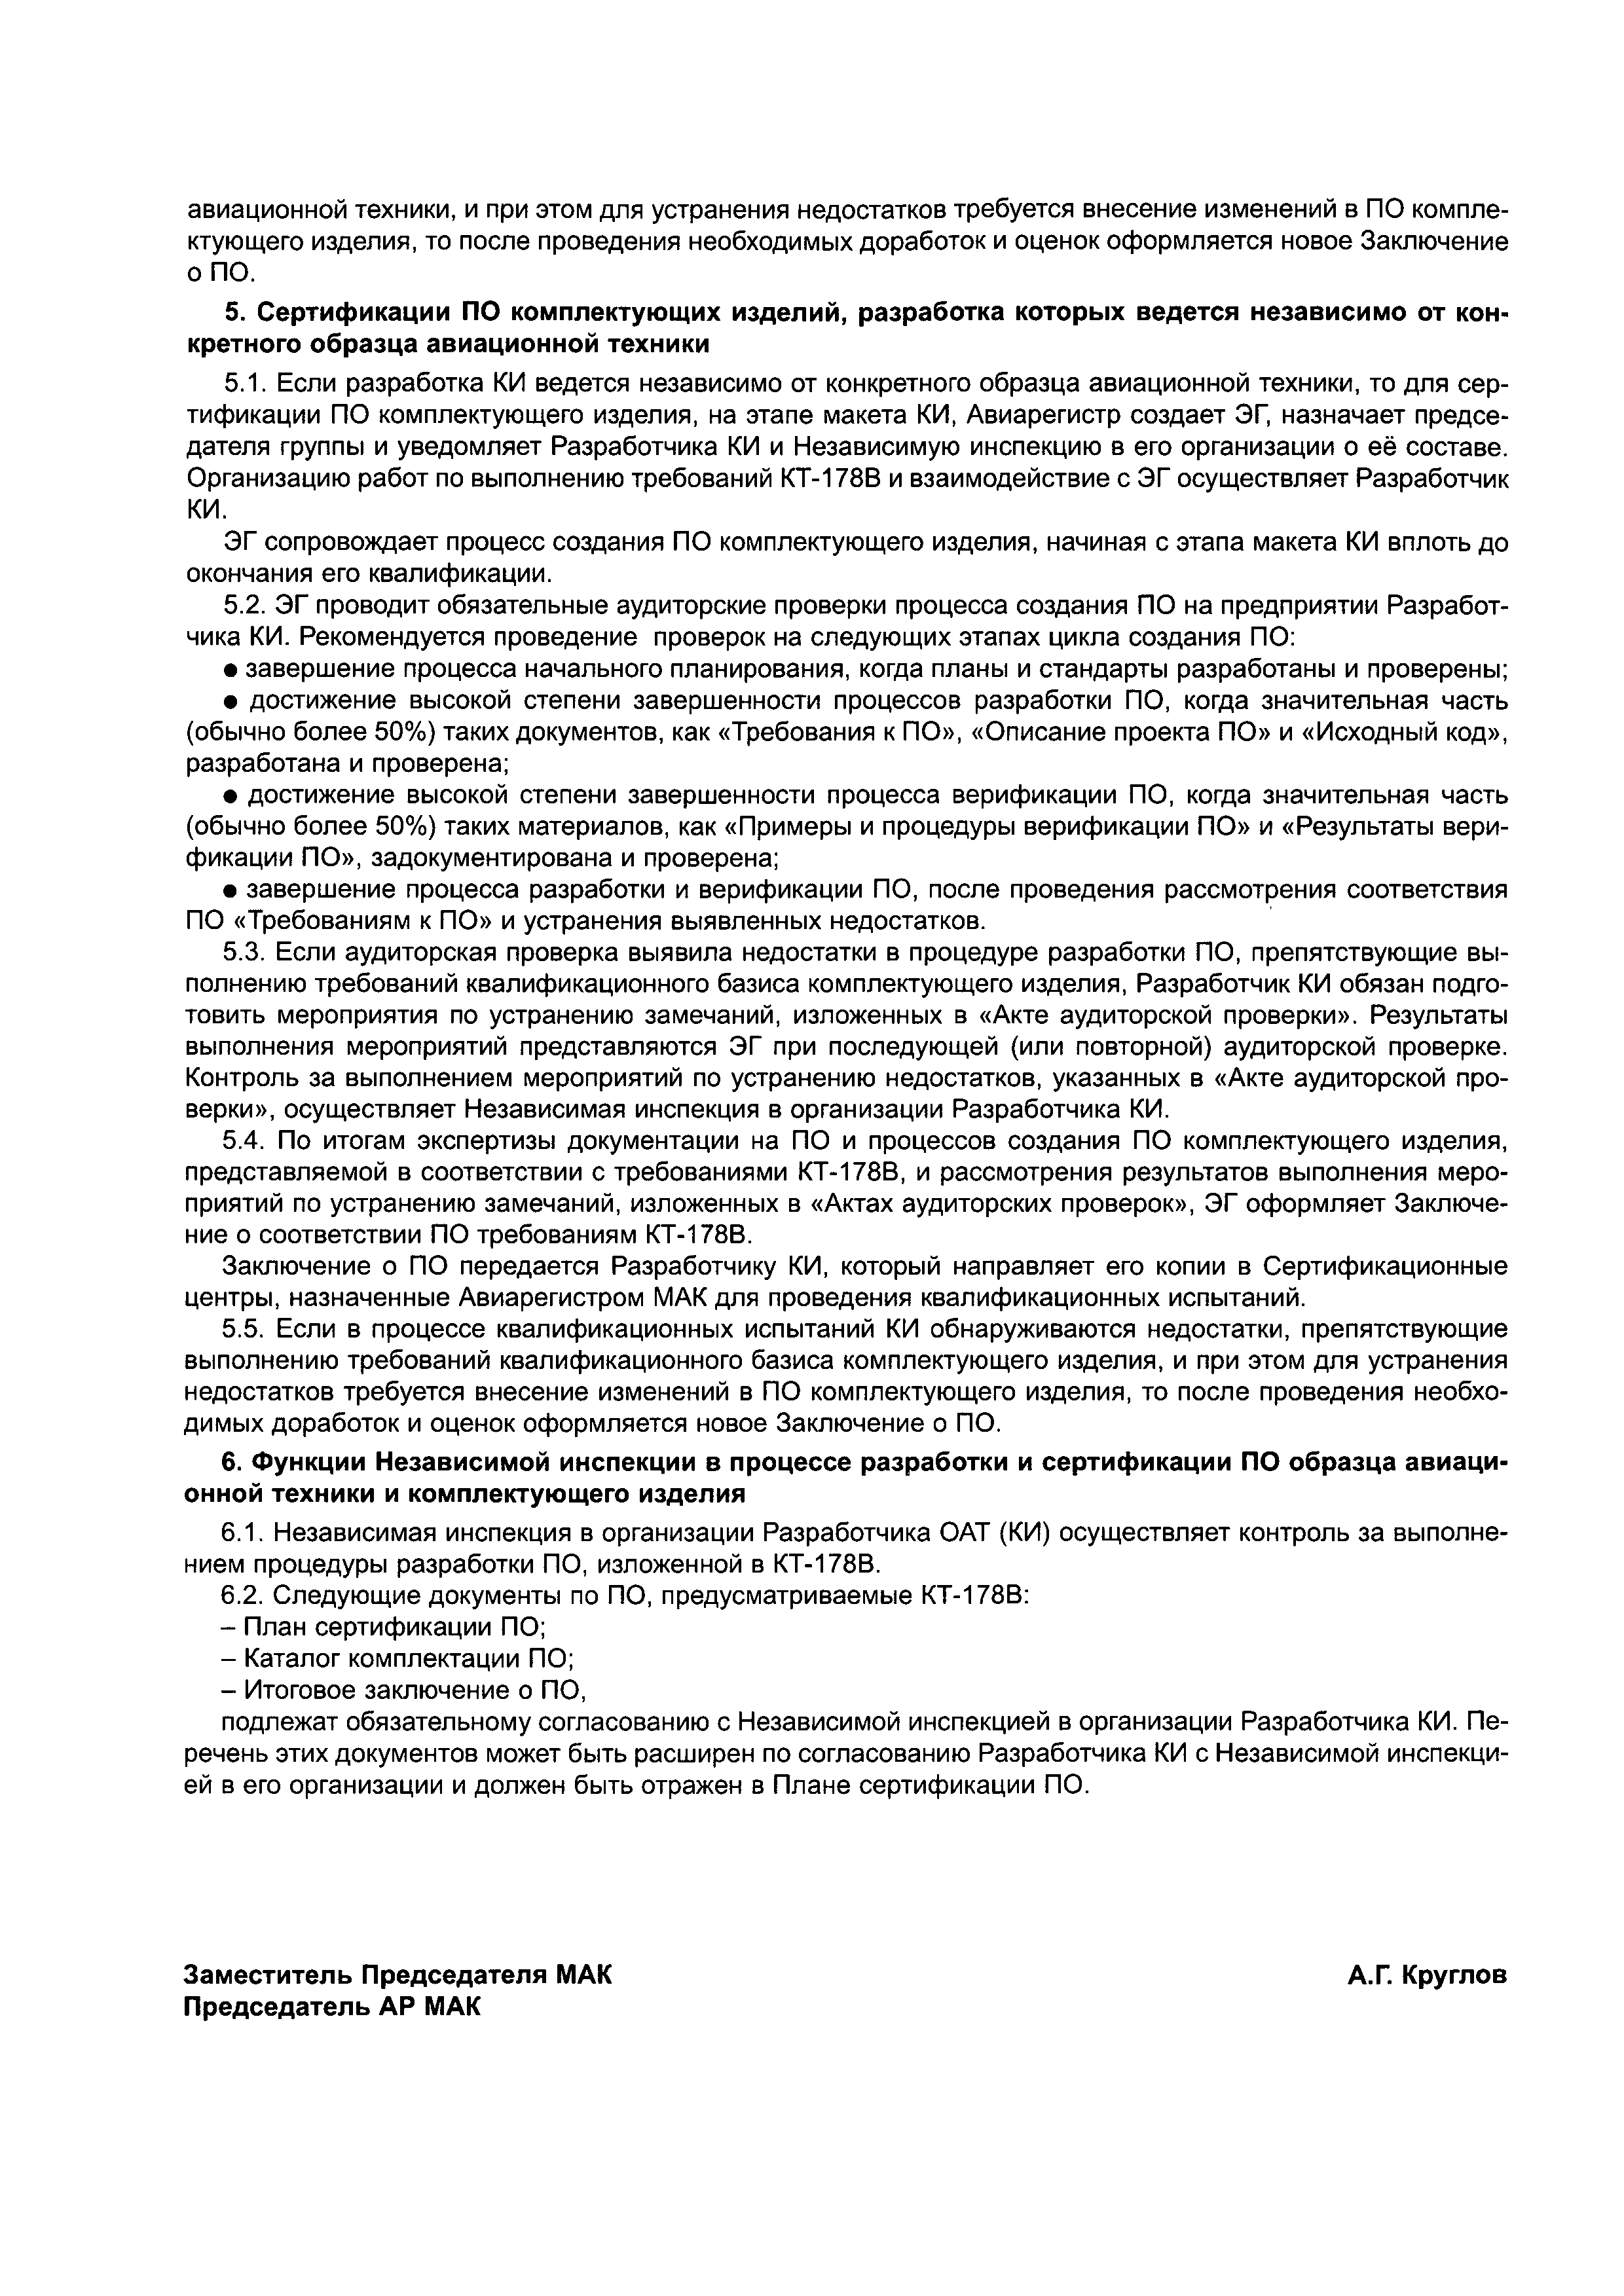 Директивное письмо 06-2004